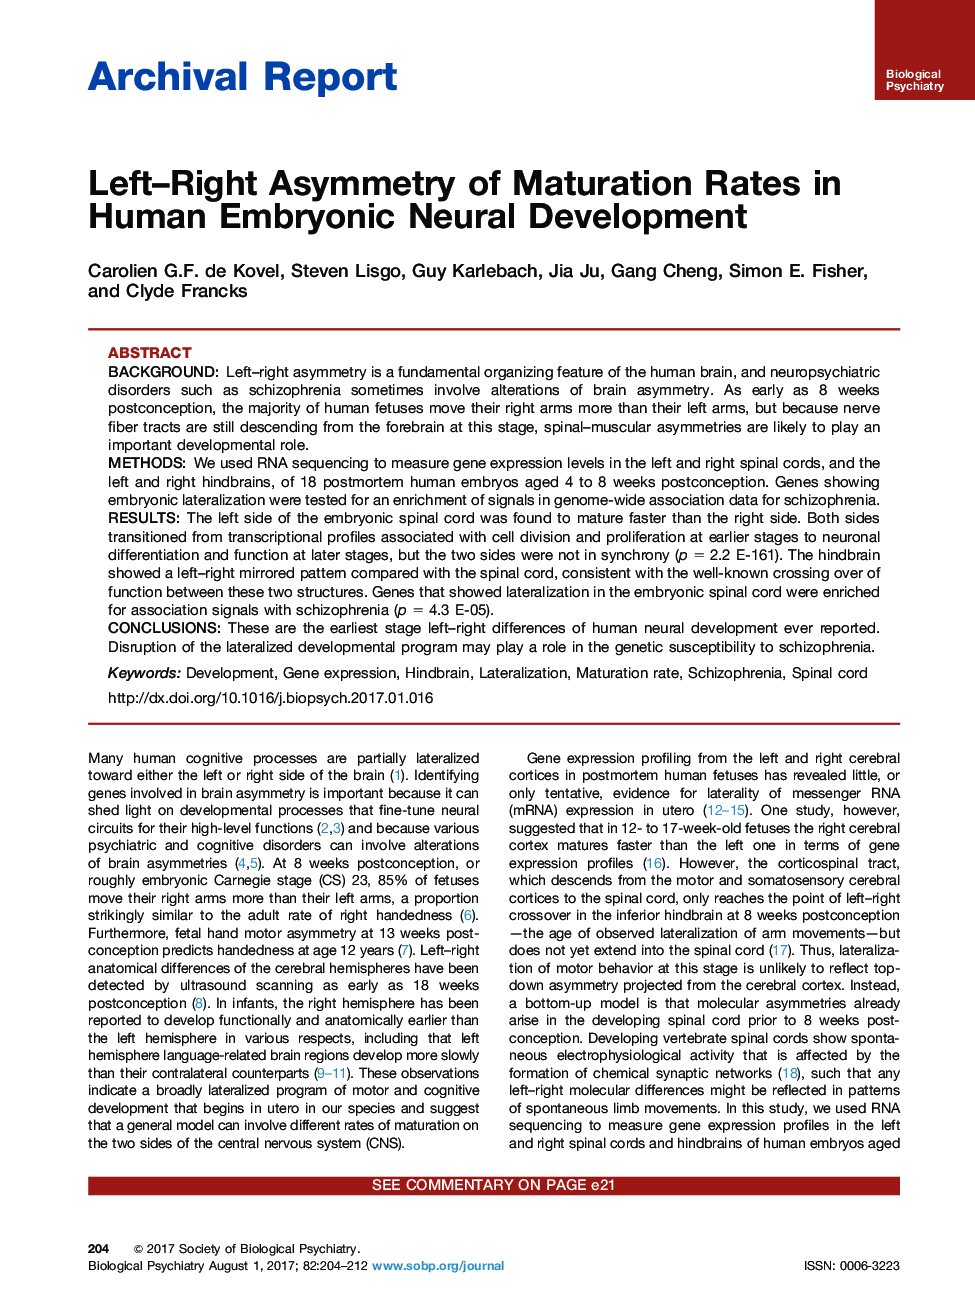 گزارش آرشیو نامتقارن چپ و راست از نرخ بلوغ در توسعه عصبی جنین انسانی 